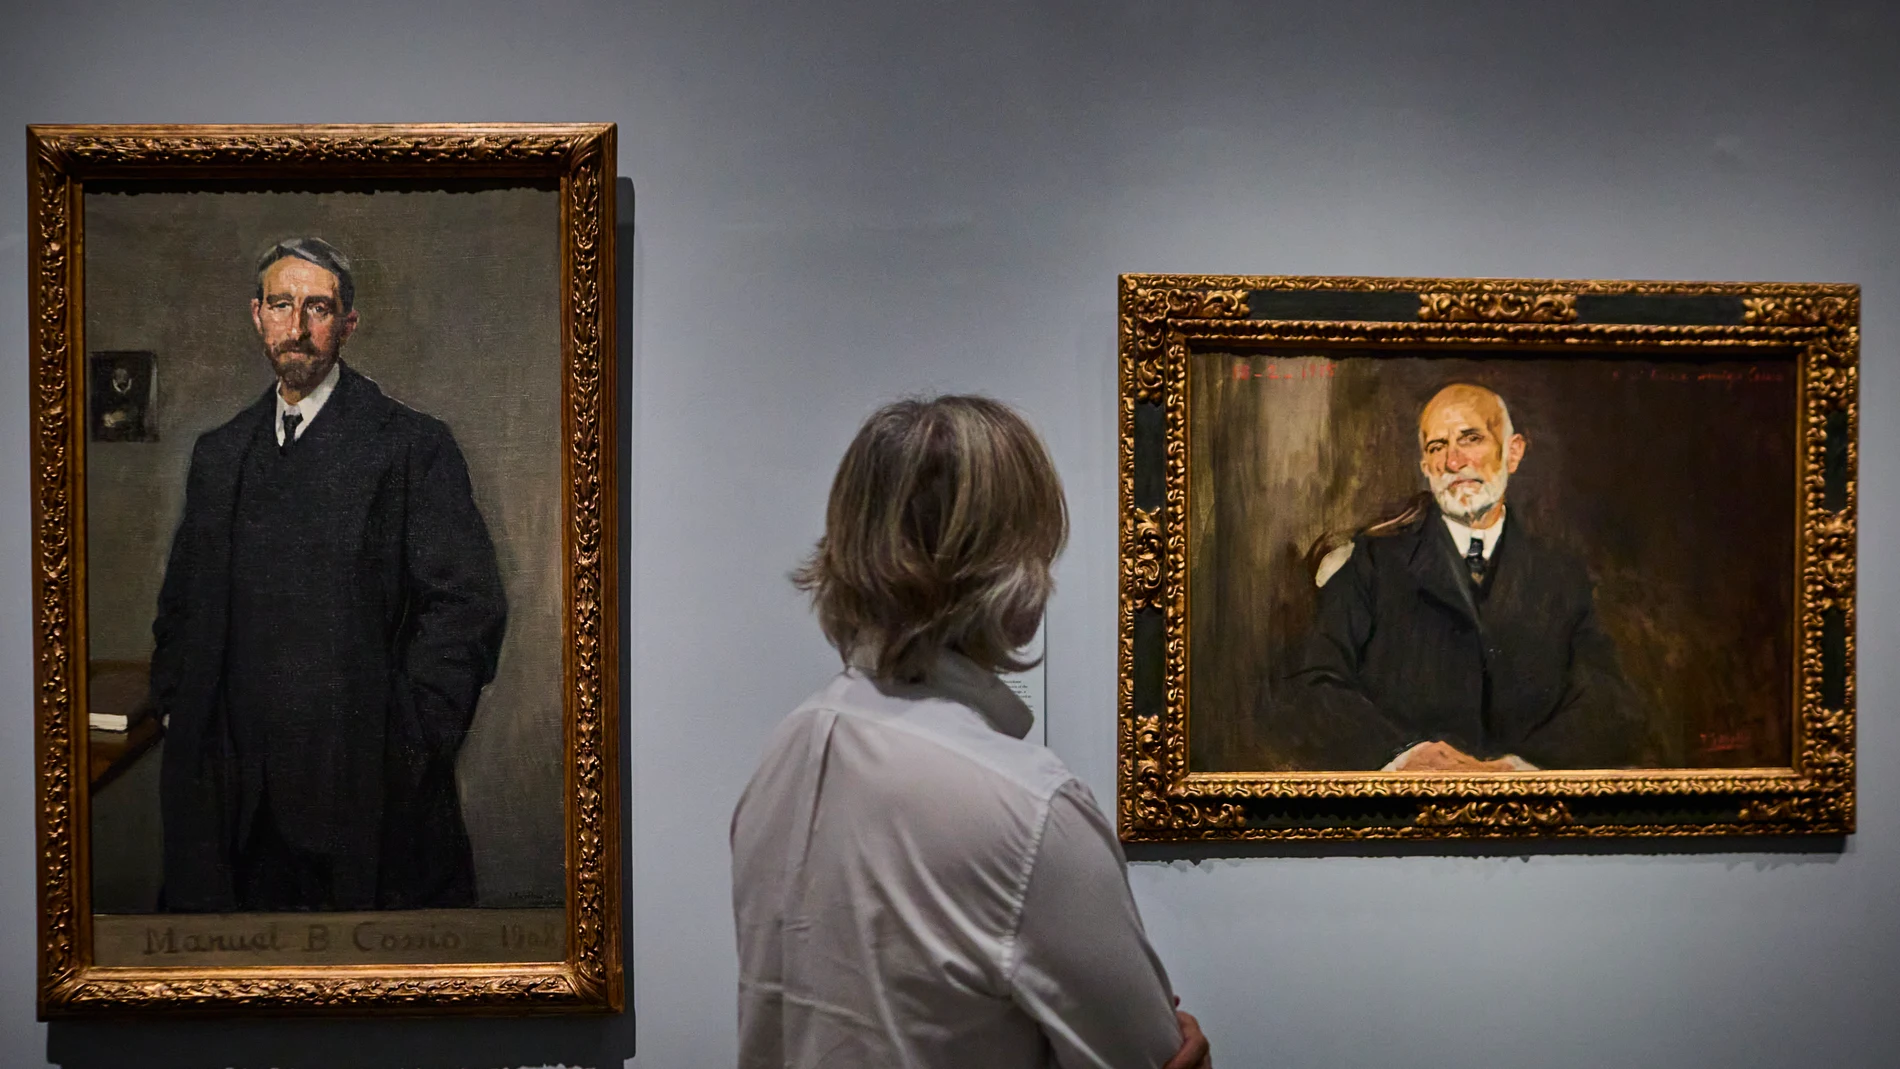 Retratos de Joaquín Sorolla en el Museo del Prado